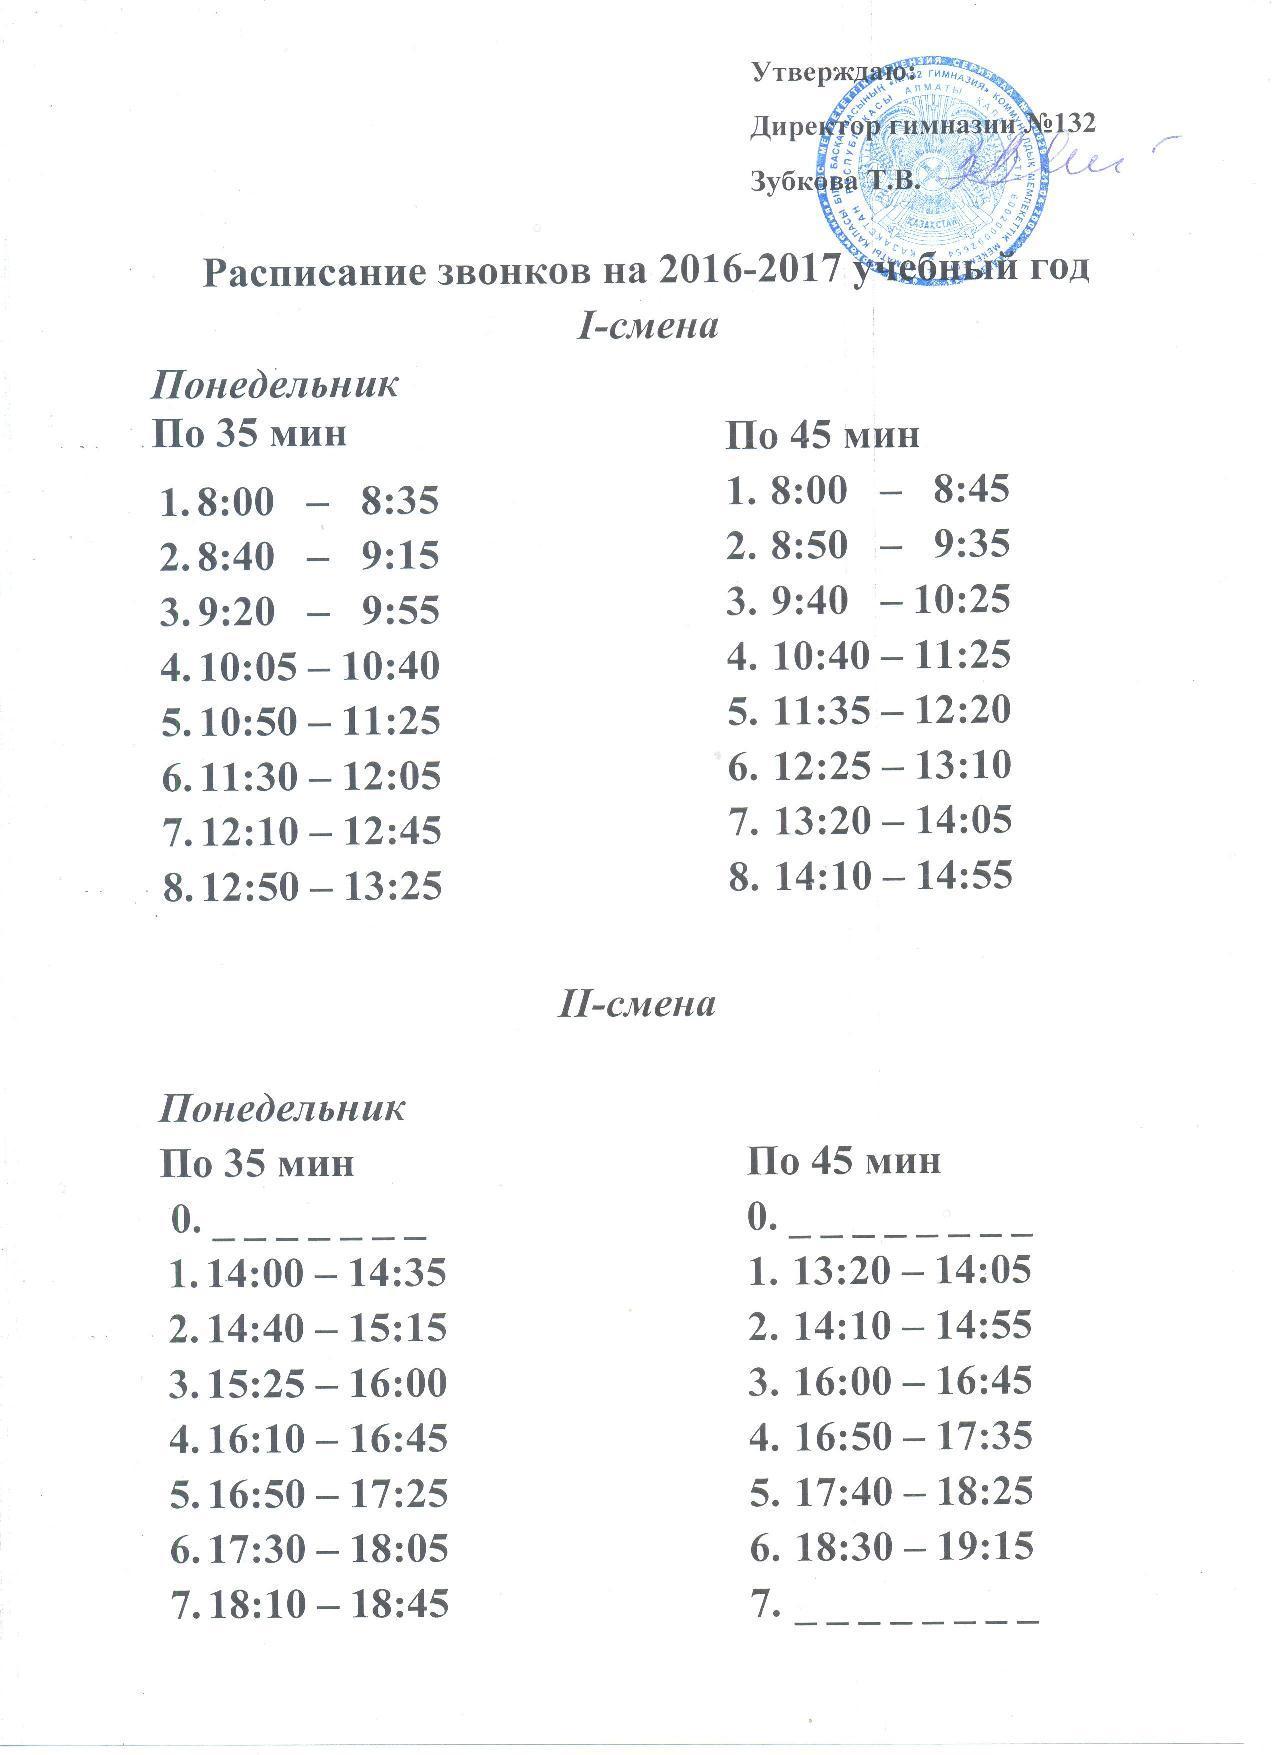 Расписание звонков на 2016-2017 учебный год